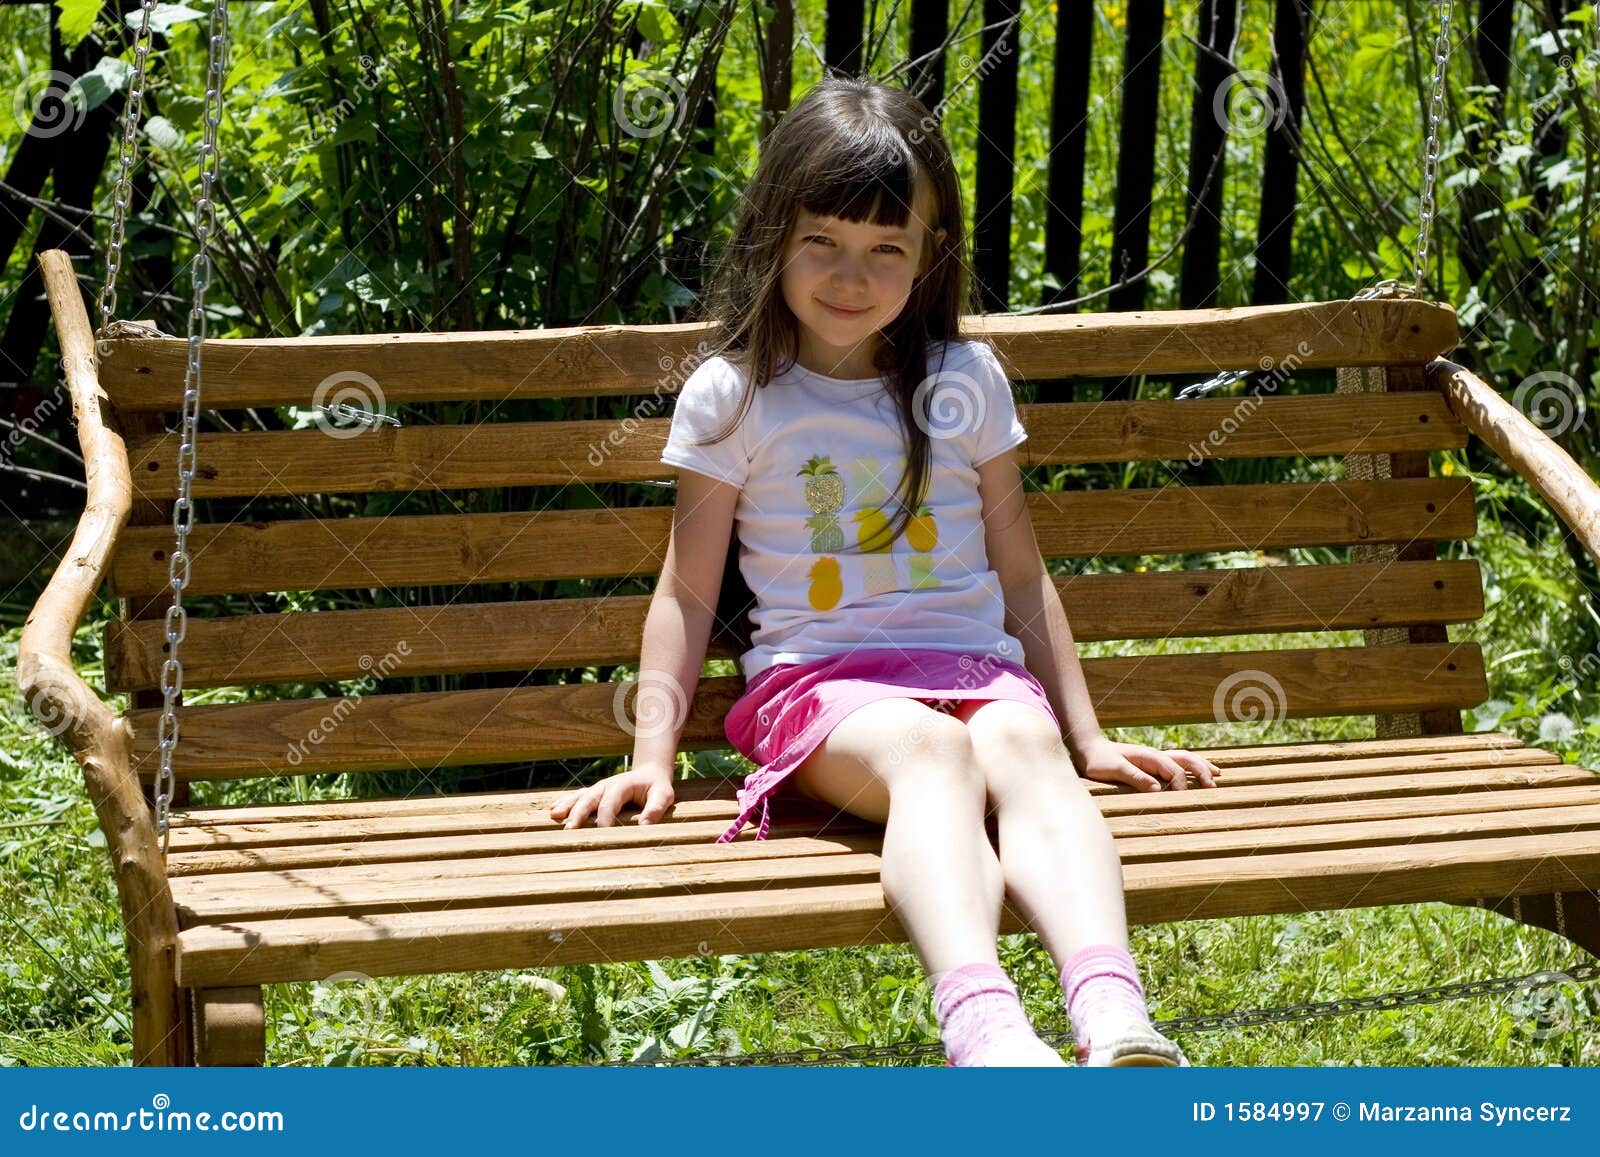 child bench